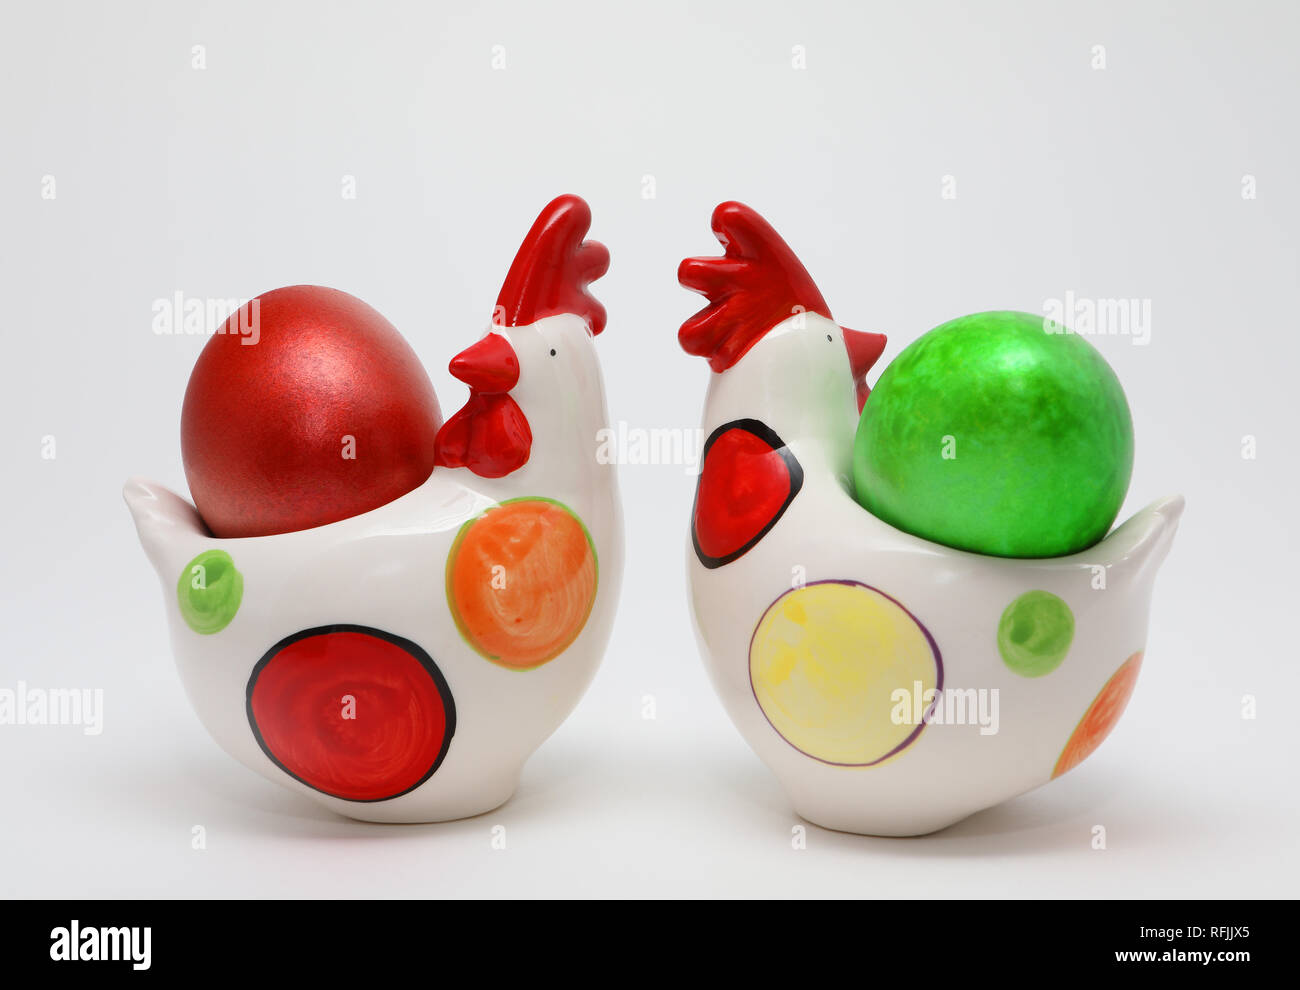 Due colorate uova di Pasqua colori rosso e verde in due galline giocattolo su sfondo bianco, la molla dell'immagine. Concetto di pasqua. Foto Stock